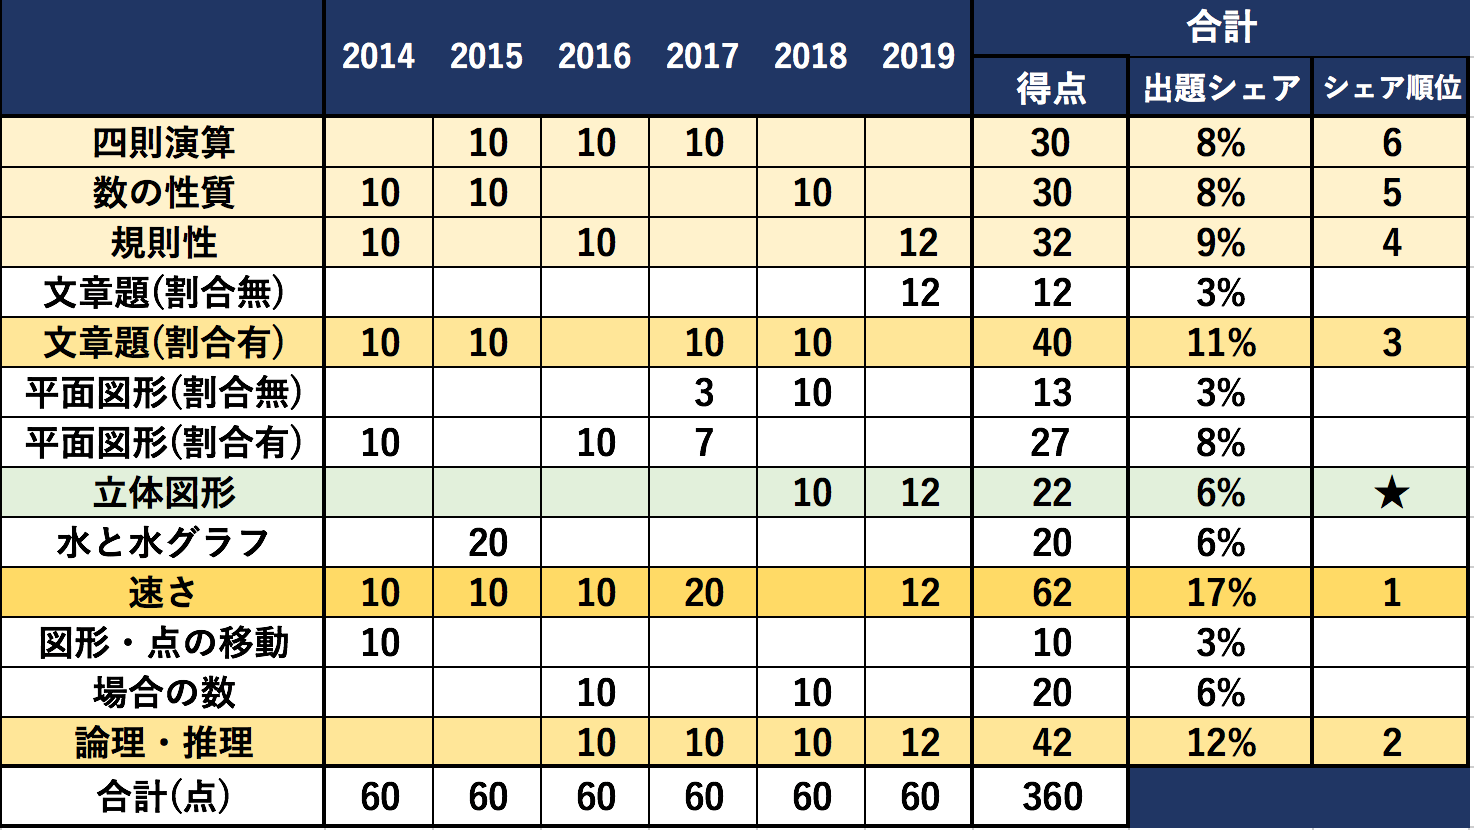 麻布中学過去6年間の出題分野一覧表